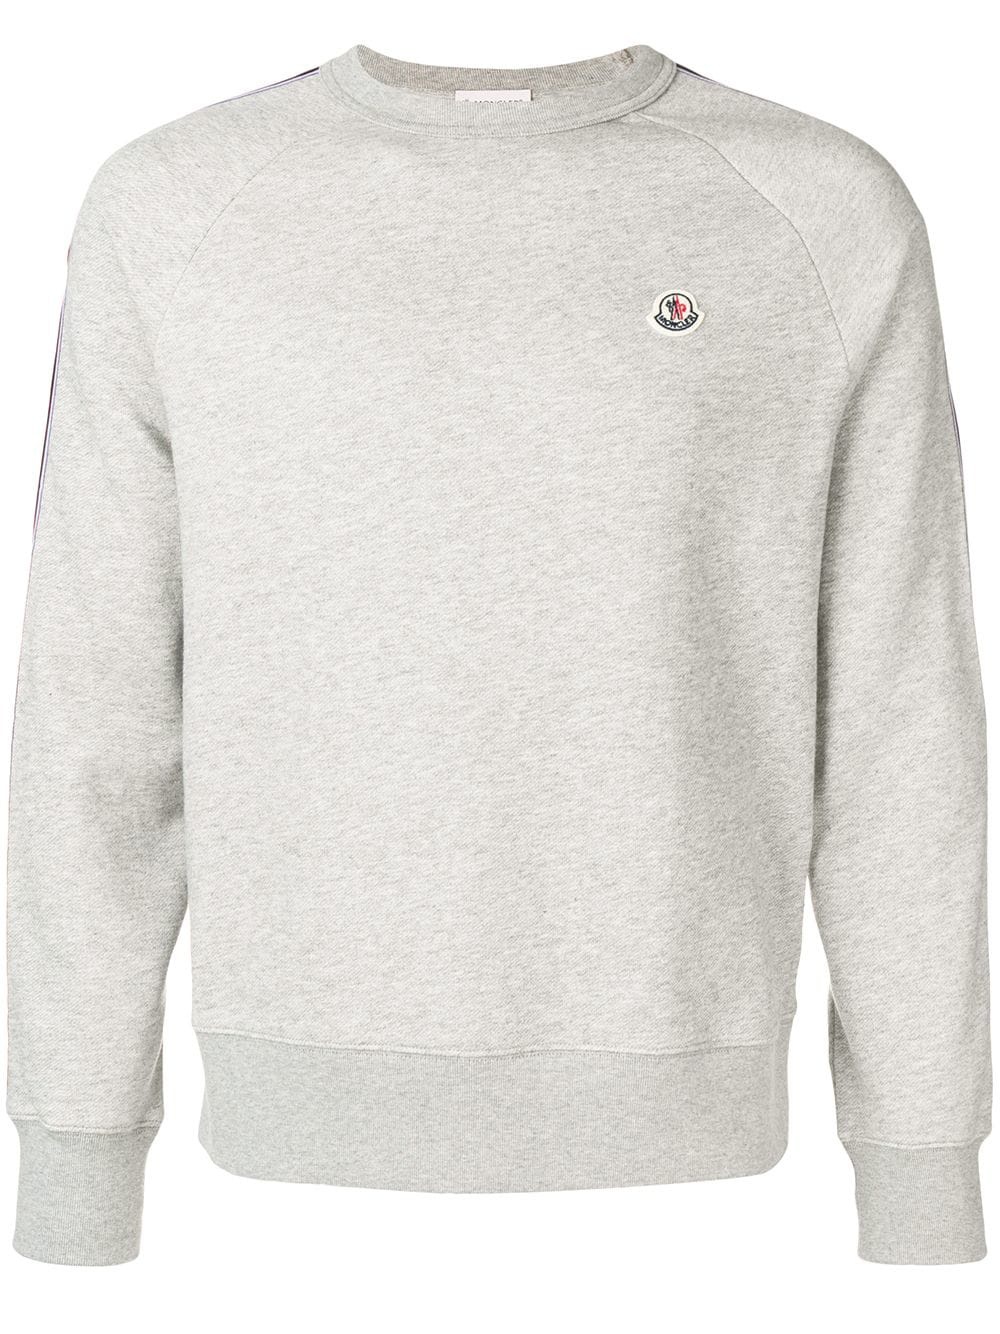 moncler sweatshirt grey